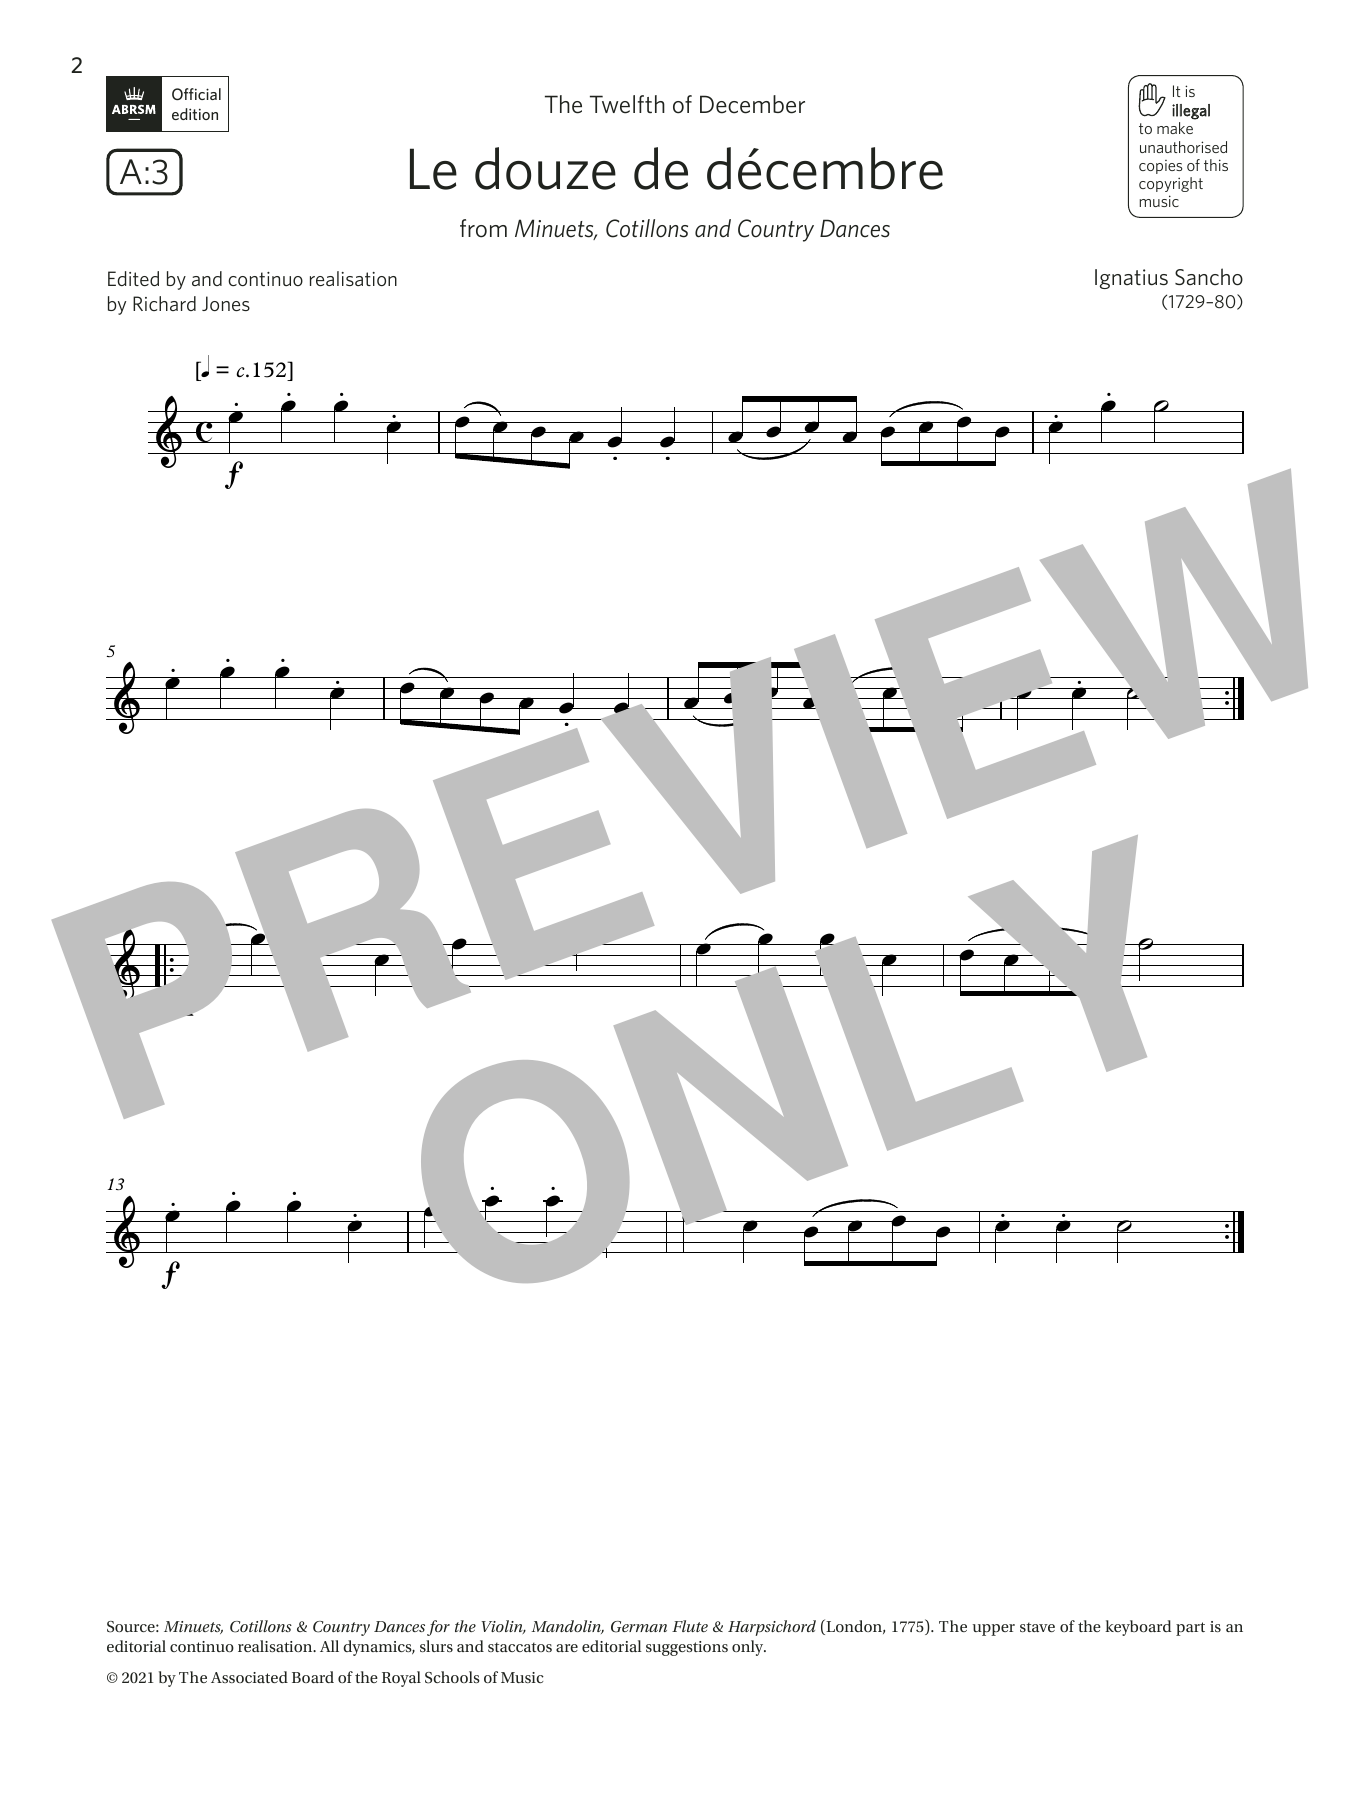 Download Ignatius Sancho Le douze de décembre (Grade 1 List A3 Sheet Music